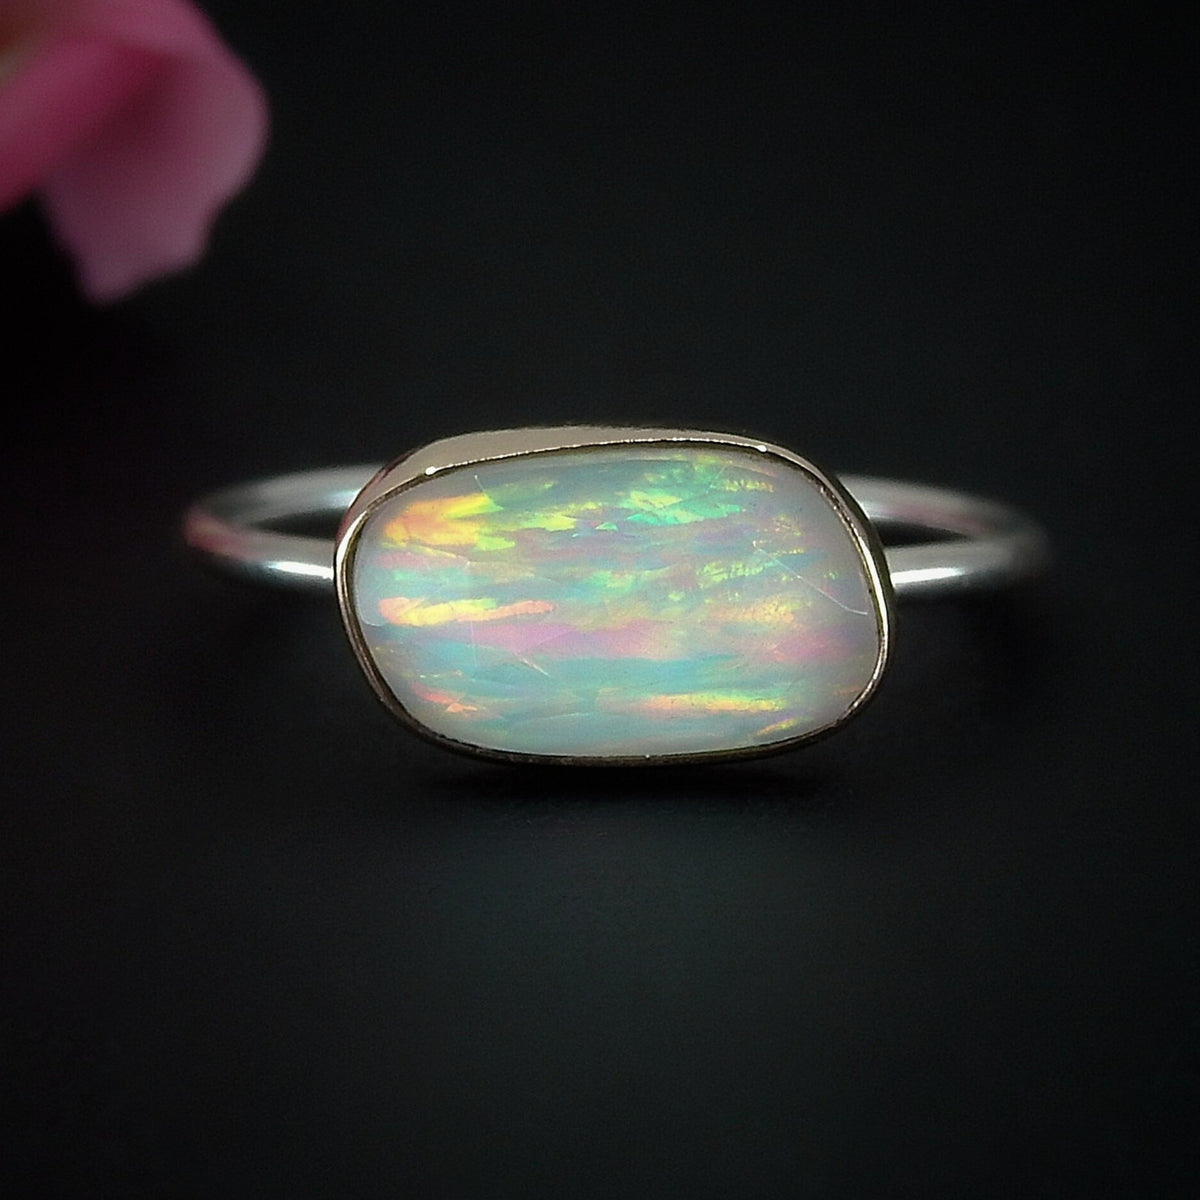 Rose Cut Clear Quartz & Aurora Opal Ring - Size 11 1/2 